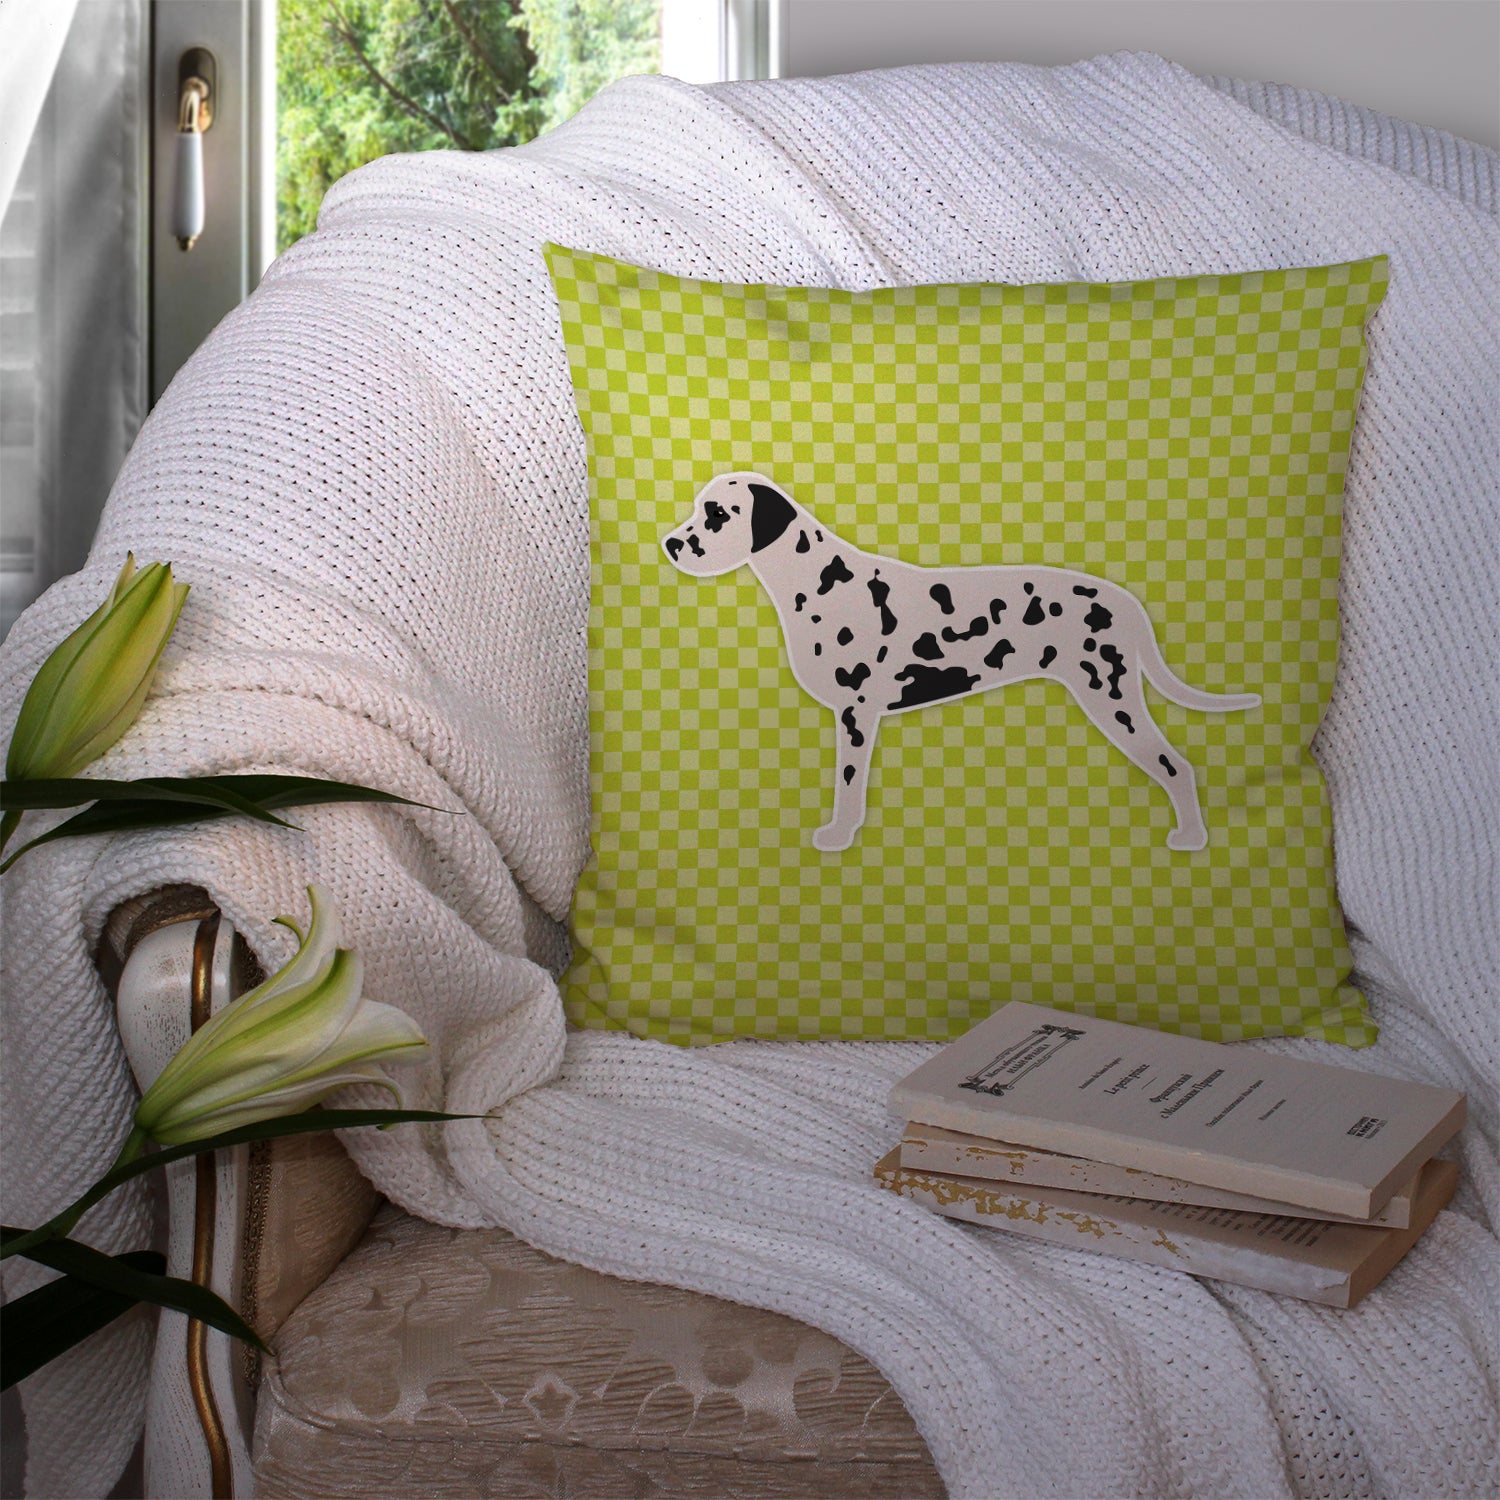 Dalmatian Checkerboard Green Fabric Decorative Pillow BB3783PW1414 - the-store.com